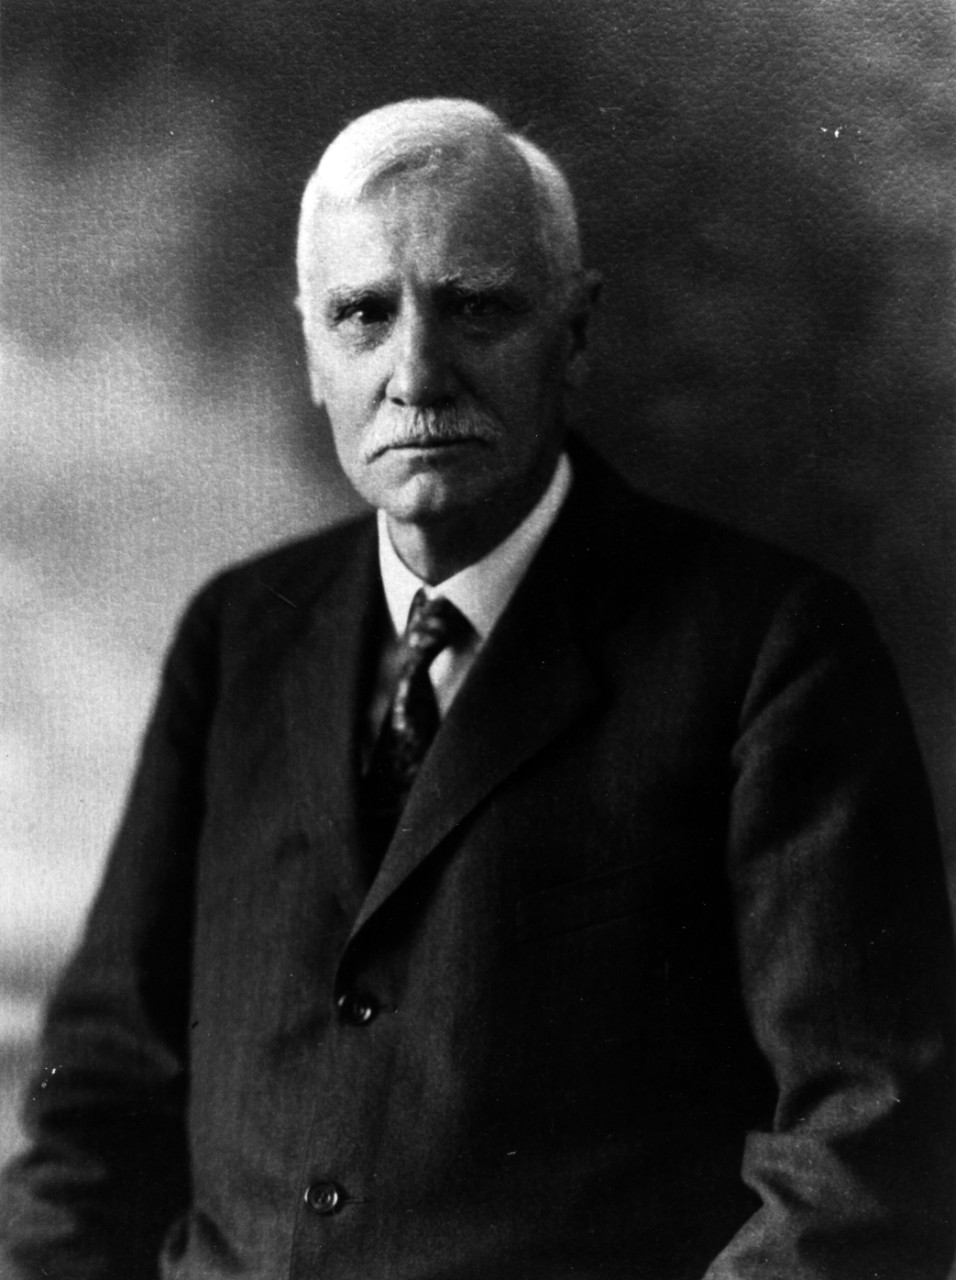 Representative Thomas Butler of Pennsylvania